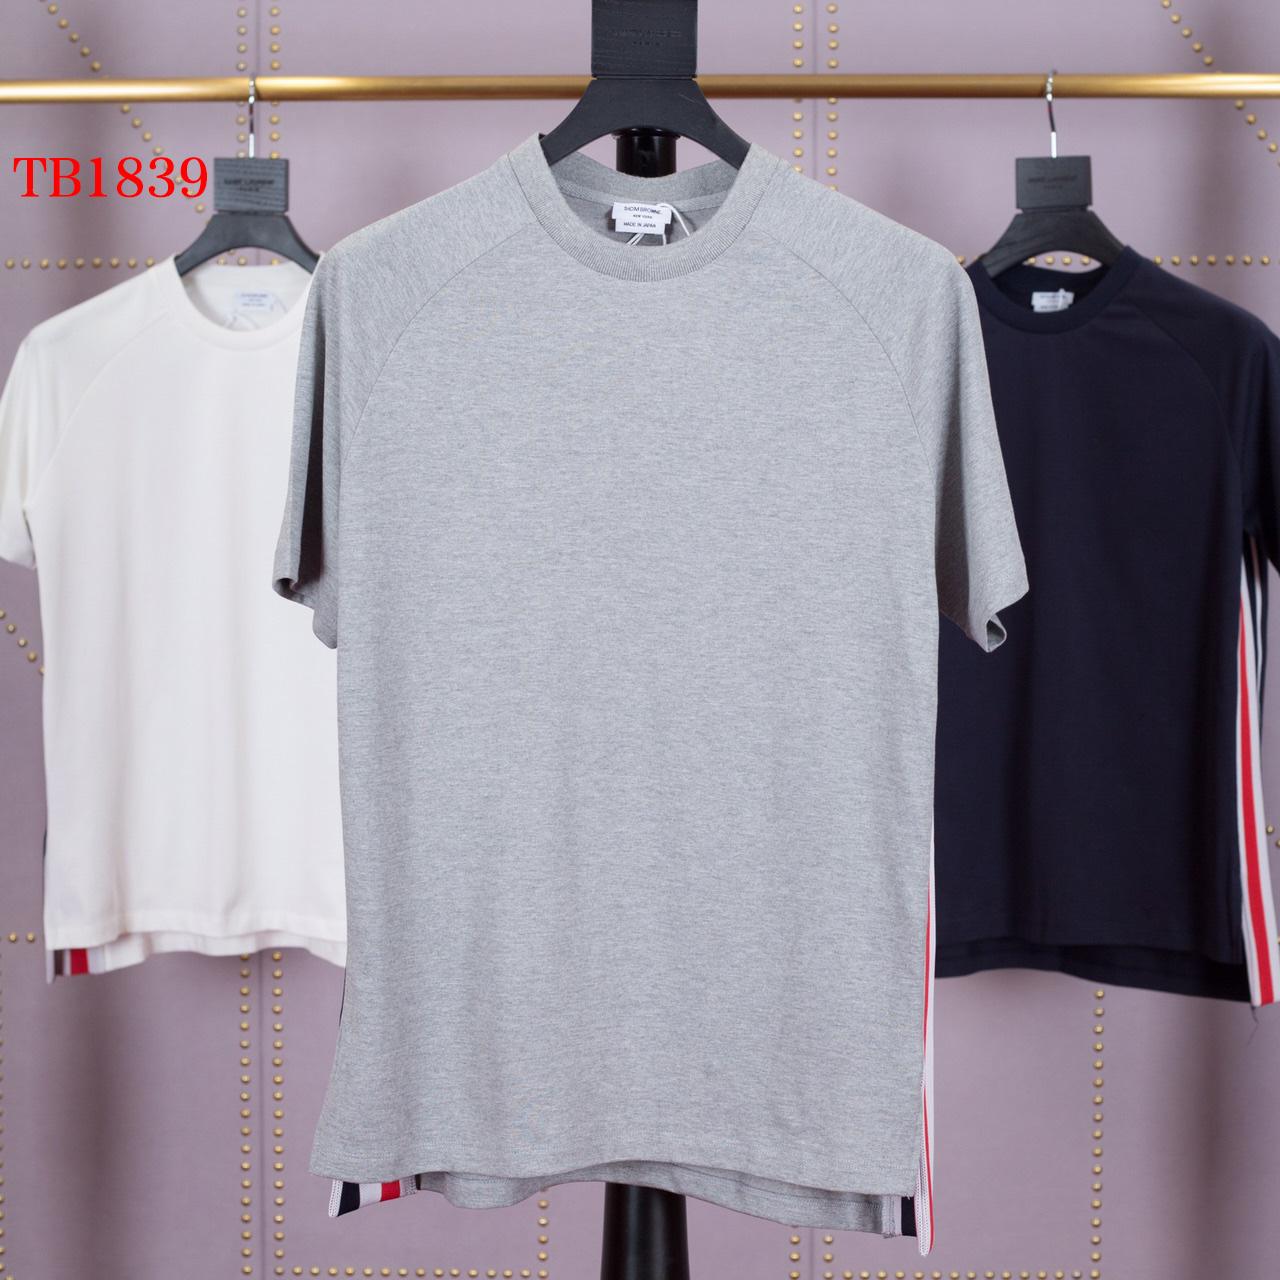 Thom Browne Interlock Rwb Stripe T-shirt   TB1839 - PerfectKickZ